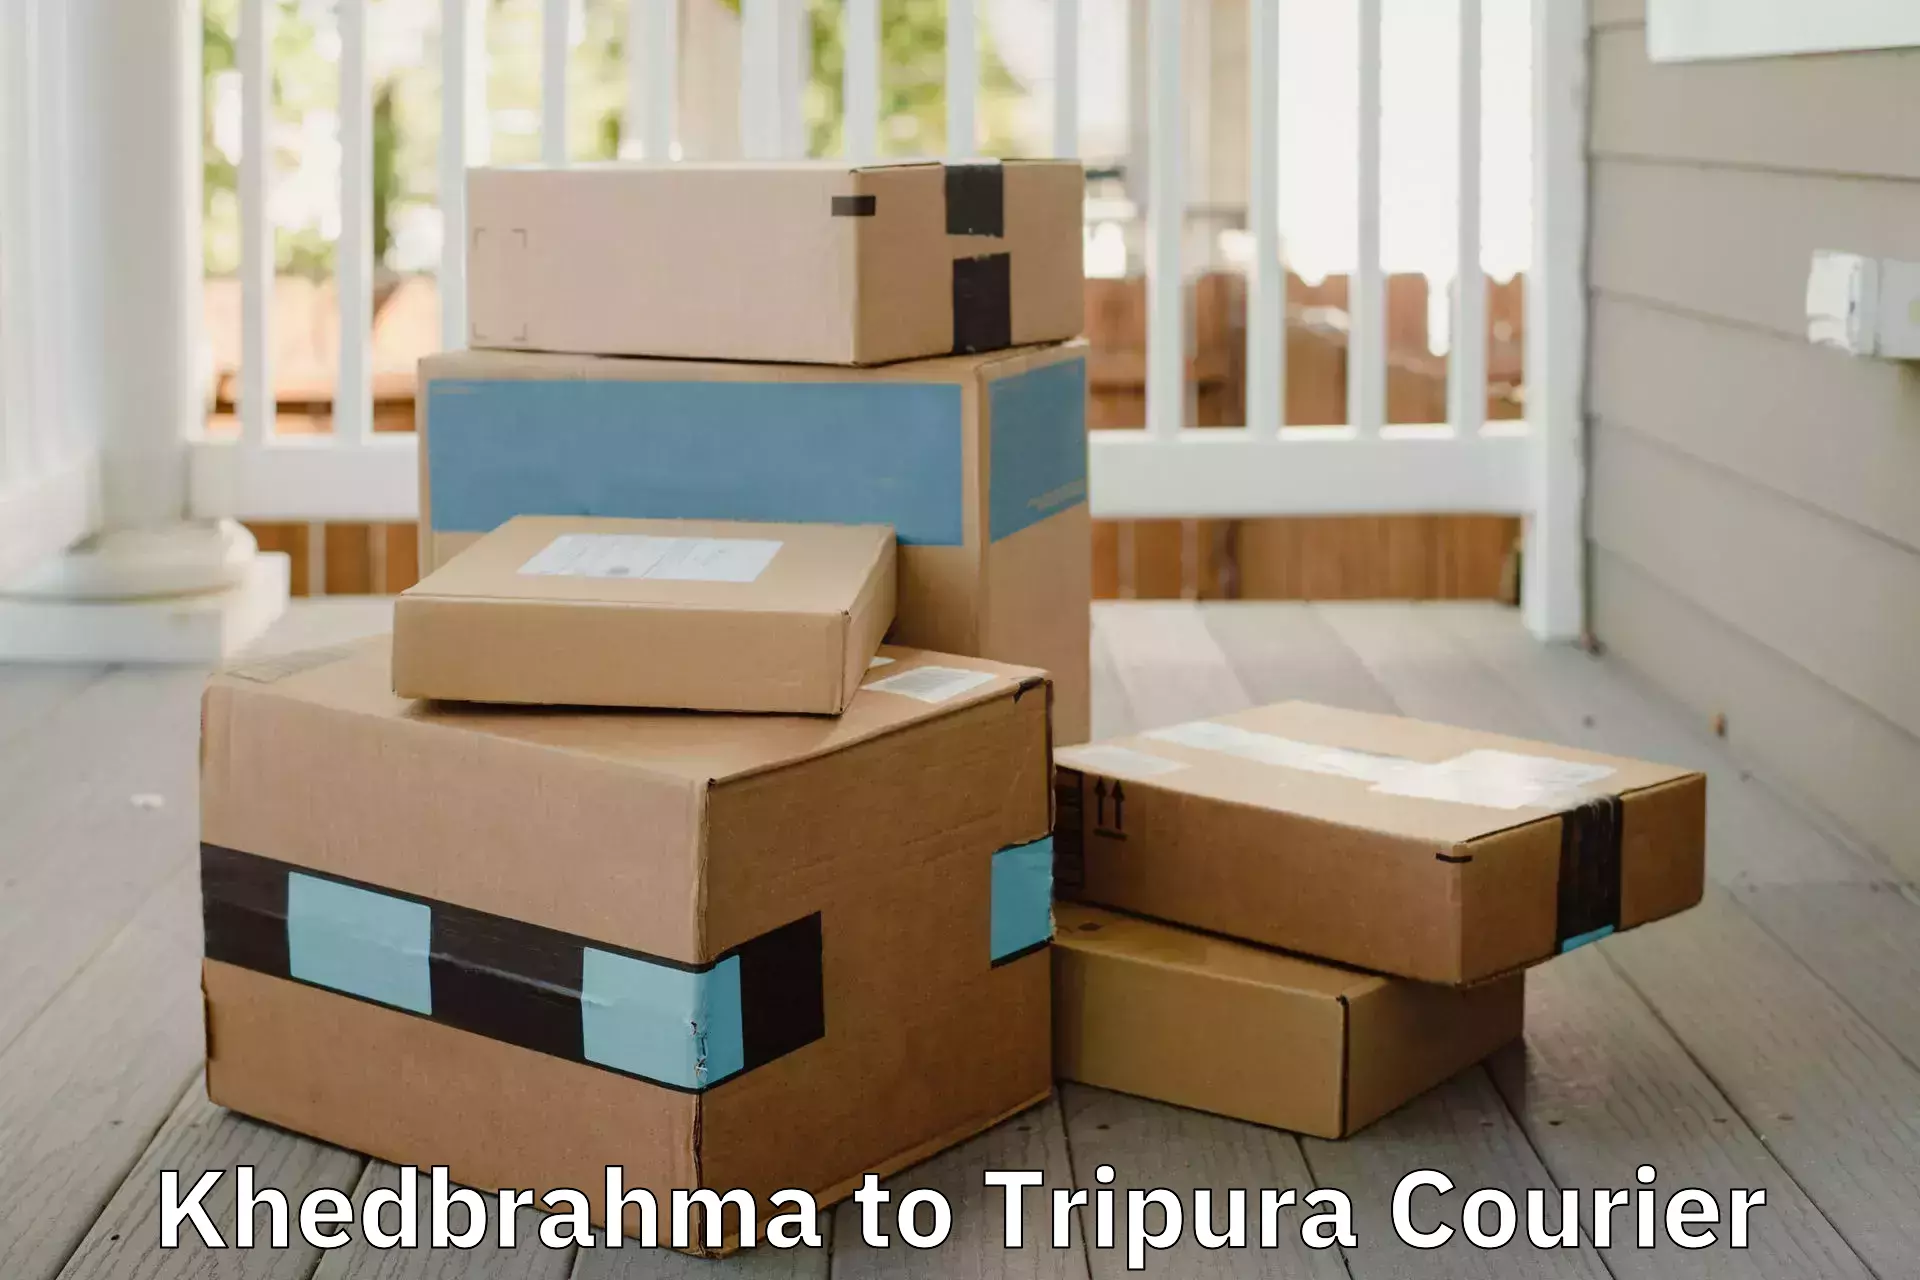 Home goods moving company Khedbrahma to Udaipur Tripura